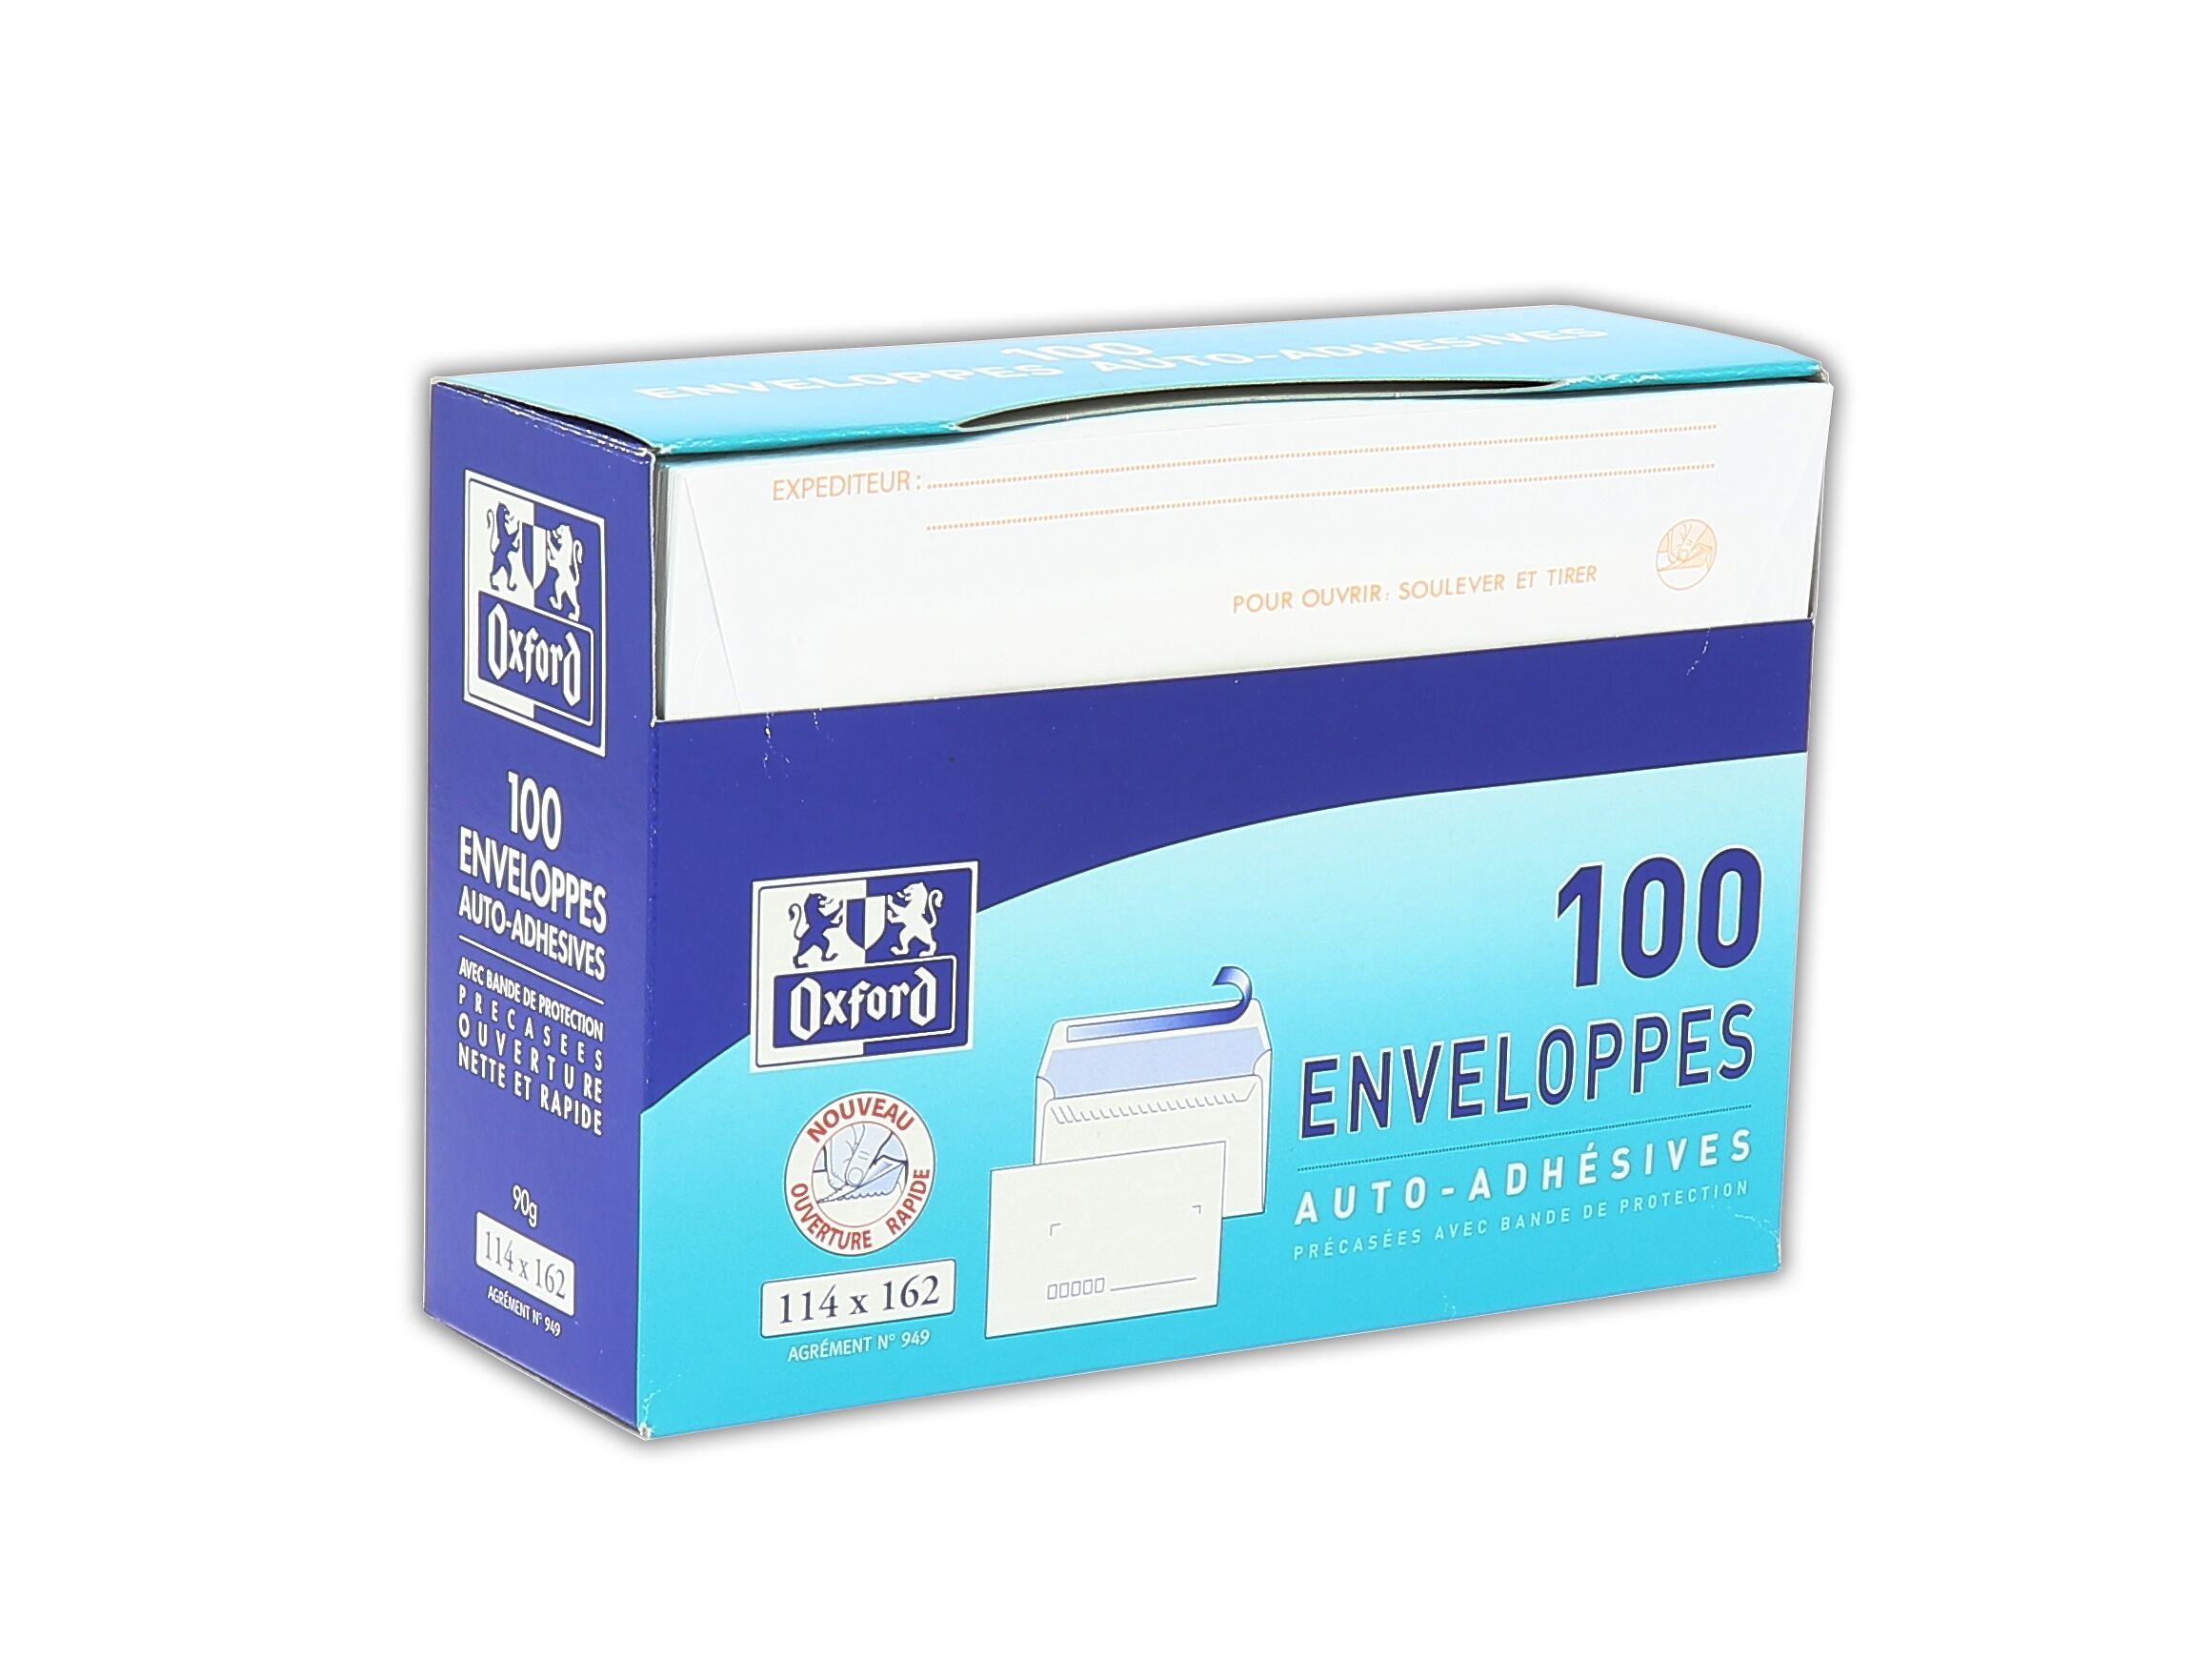 Enveloppe carrée blanche papier vélin 150 x 150 mm120g sans fenêtre  fermeture auto-adhésive - Boîte de 250 - Enveloppes spécifiques, Chronopost